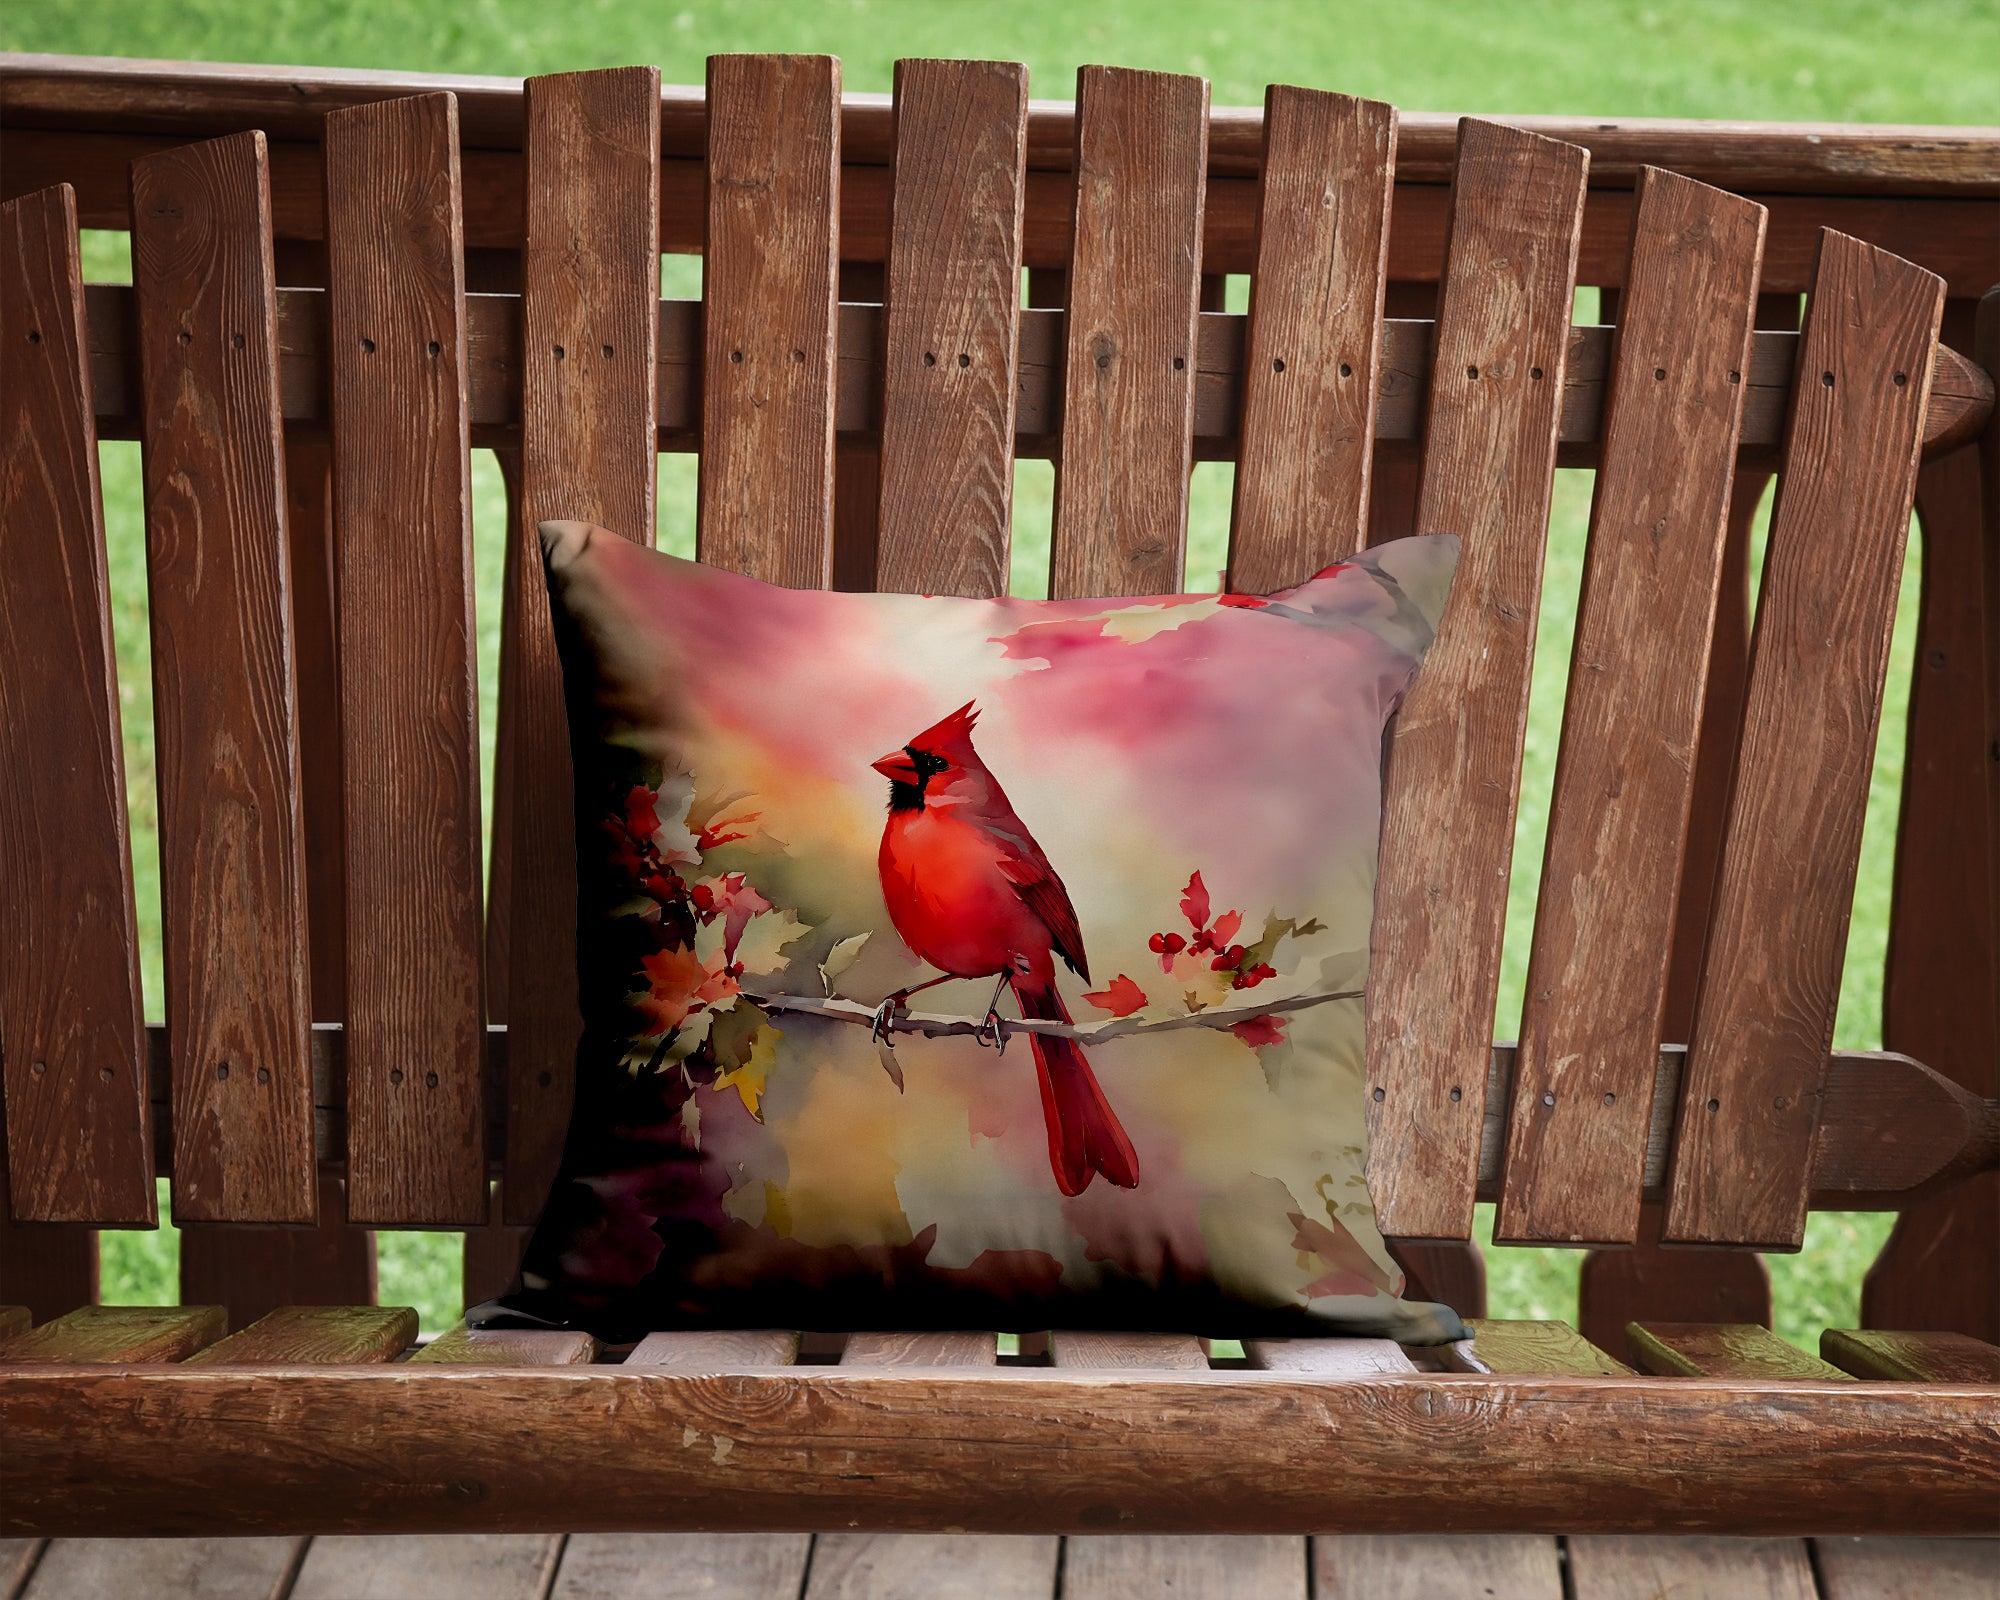 Buy this Cardinal Throw Pillow